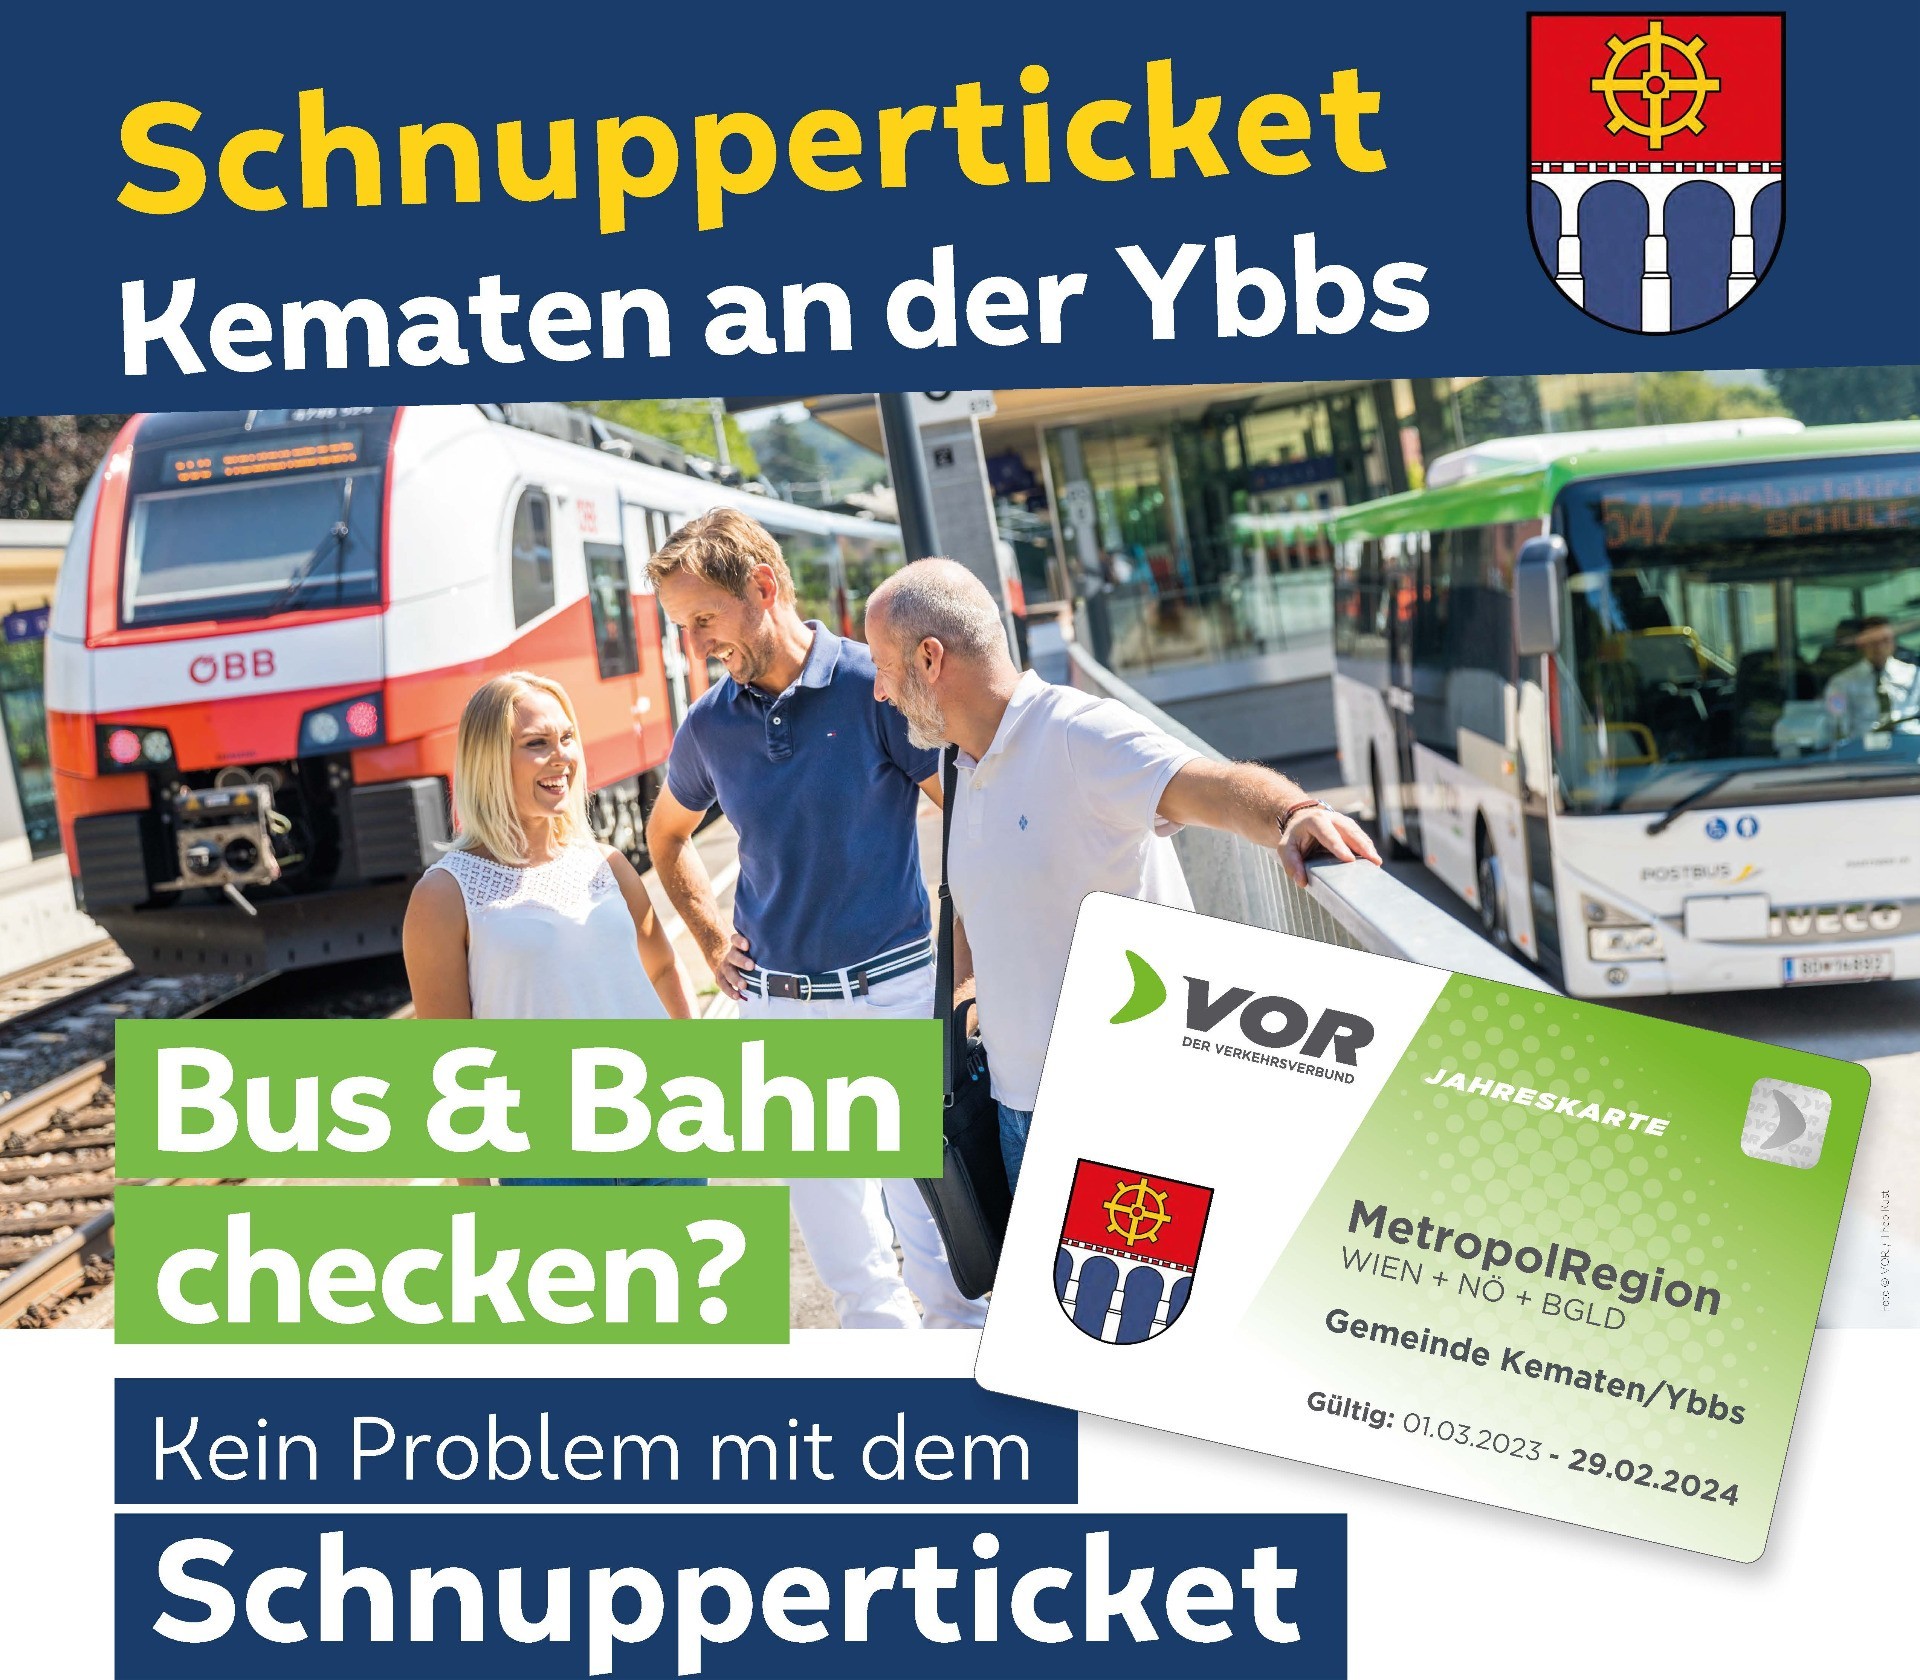 Schnupperticket_Plakat_A1_Kematen-Ybbs Logo.jpg